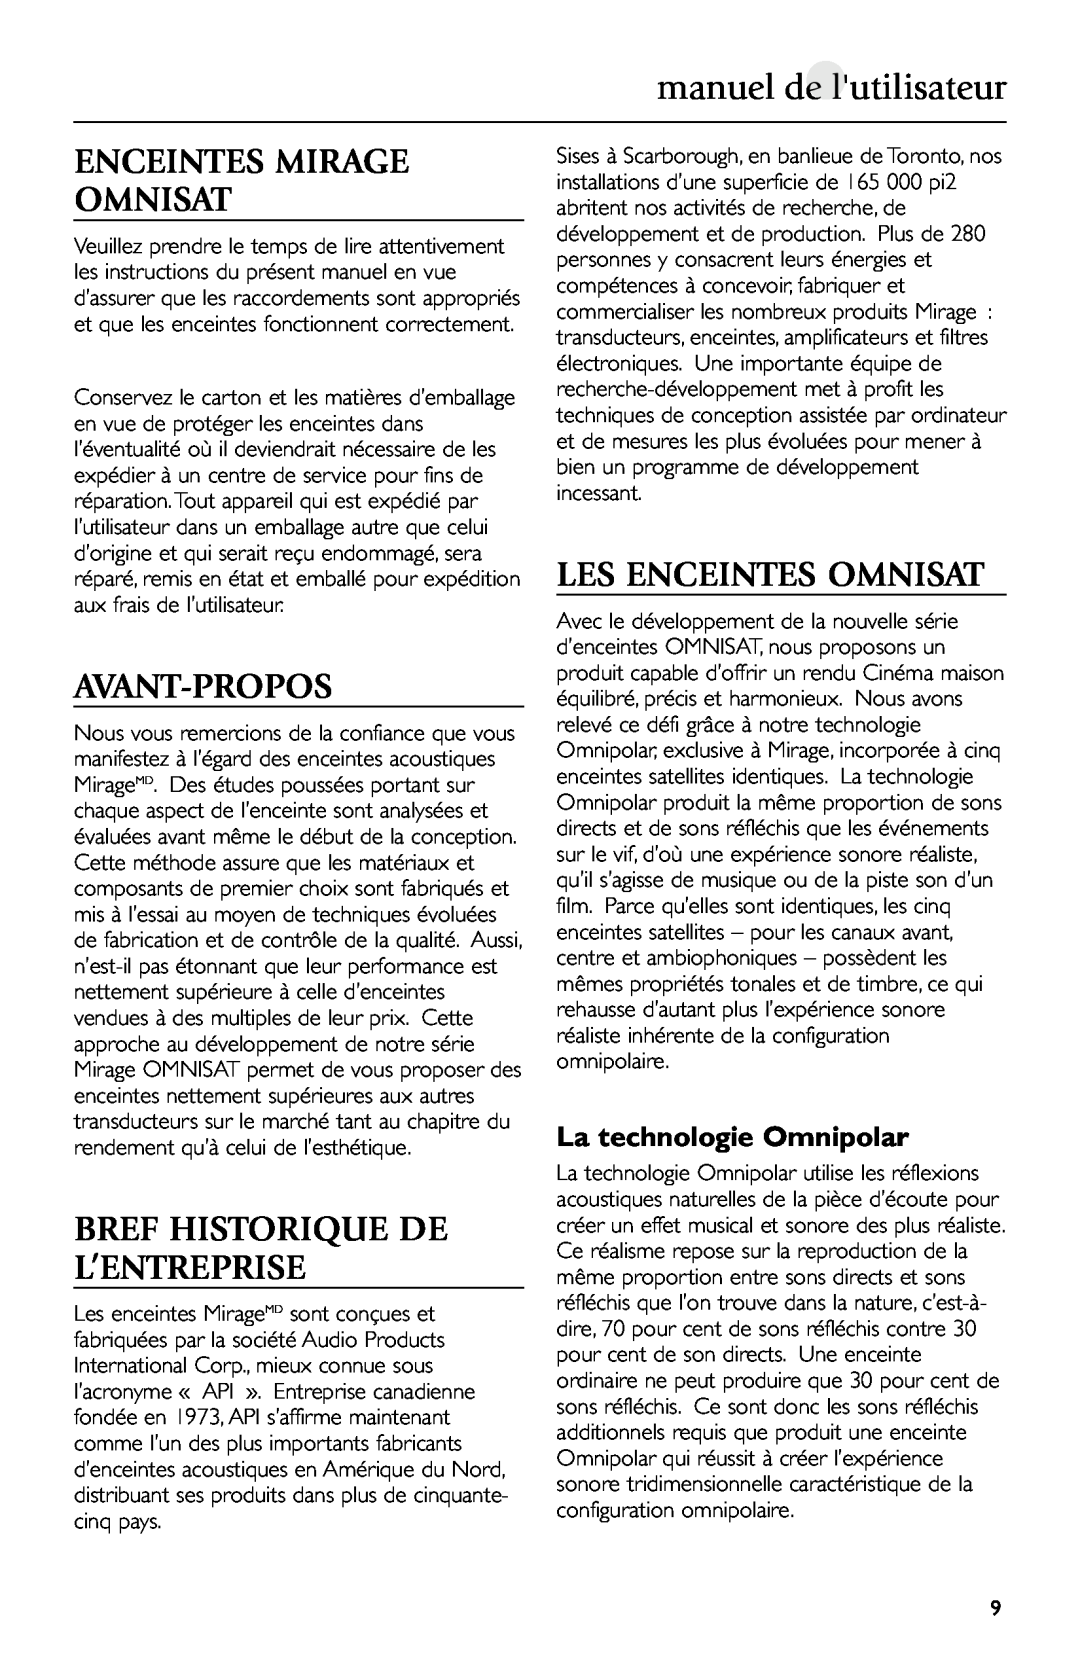 Mirage Loudspeakers manuel de lutilisateur, Enceintes Mirage Omnisat, Avant-Propos, Bref Historique De L’Entreprise 